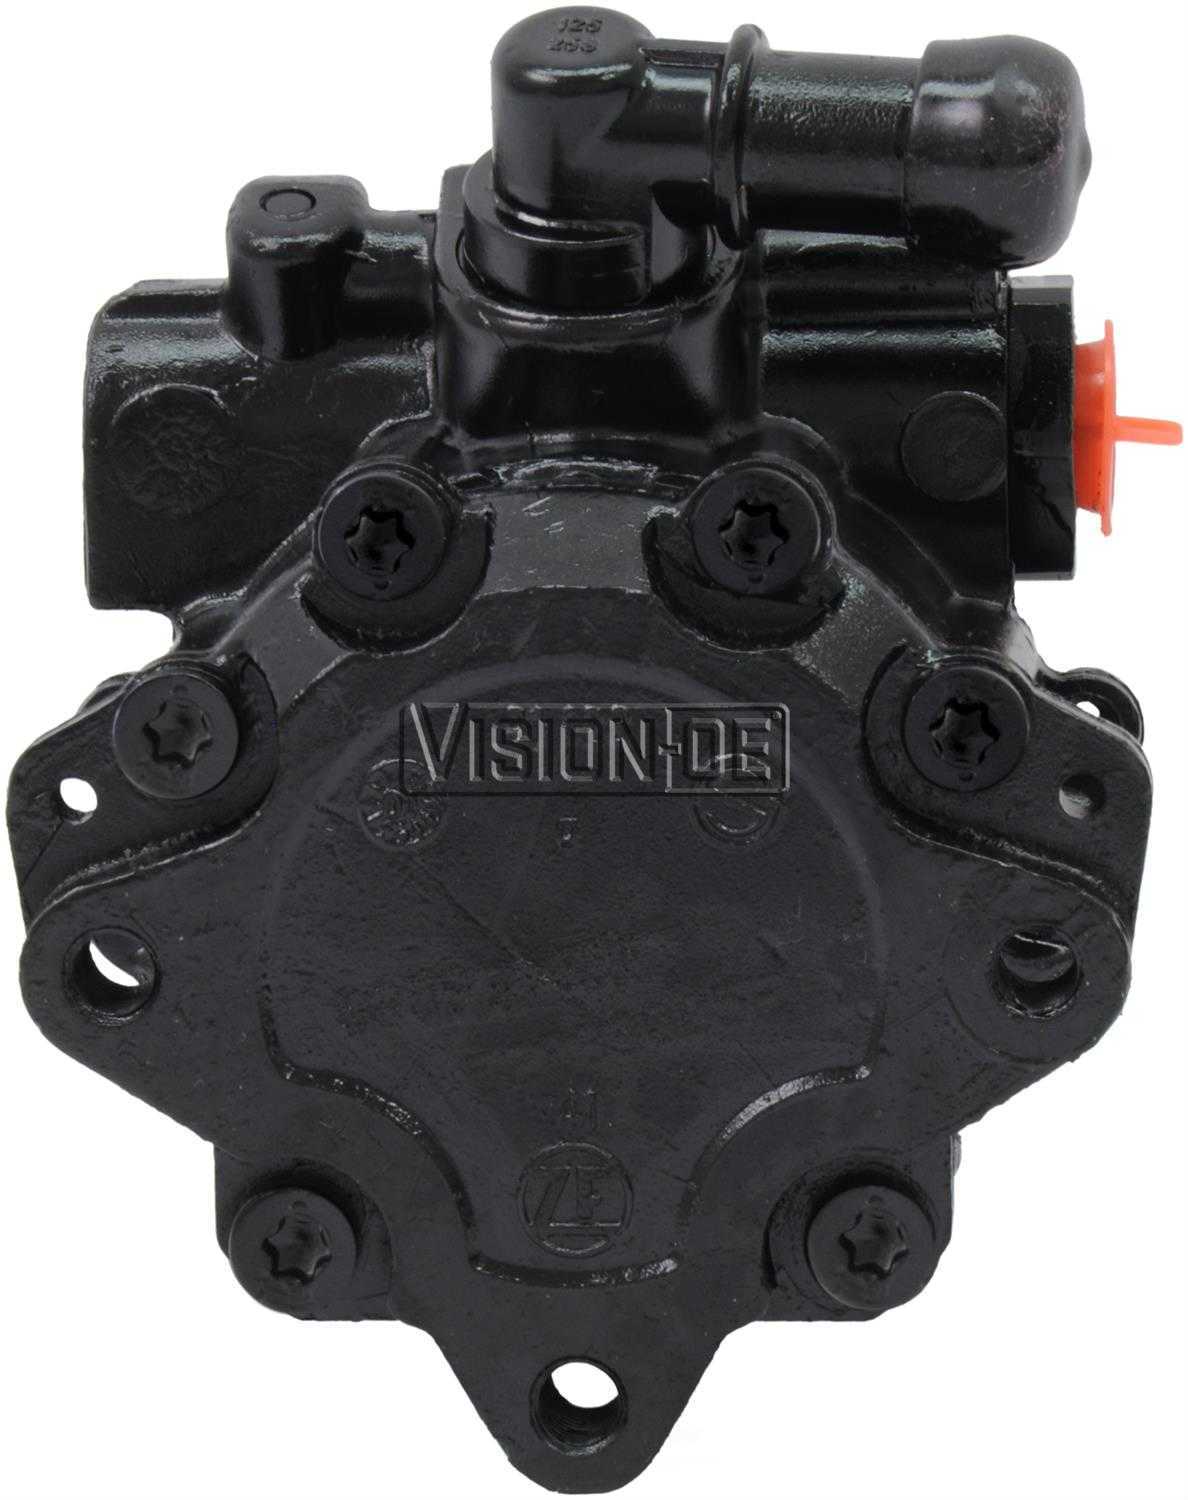 VISION-OE - Reman Power Steering Pump - VOE 730-0132